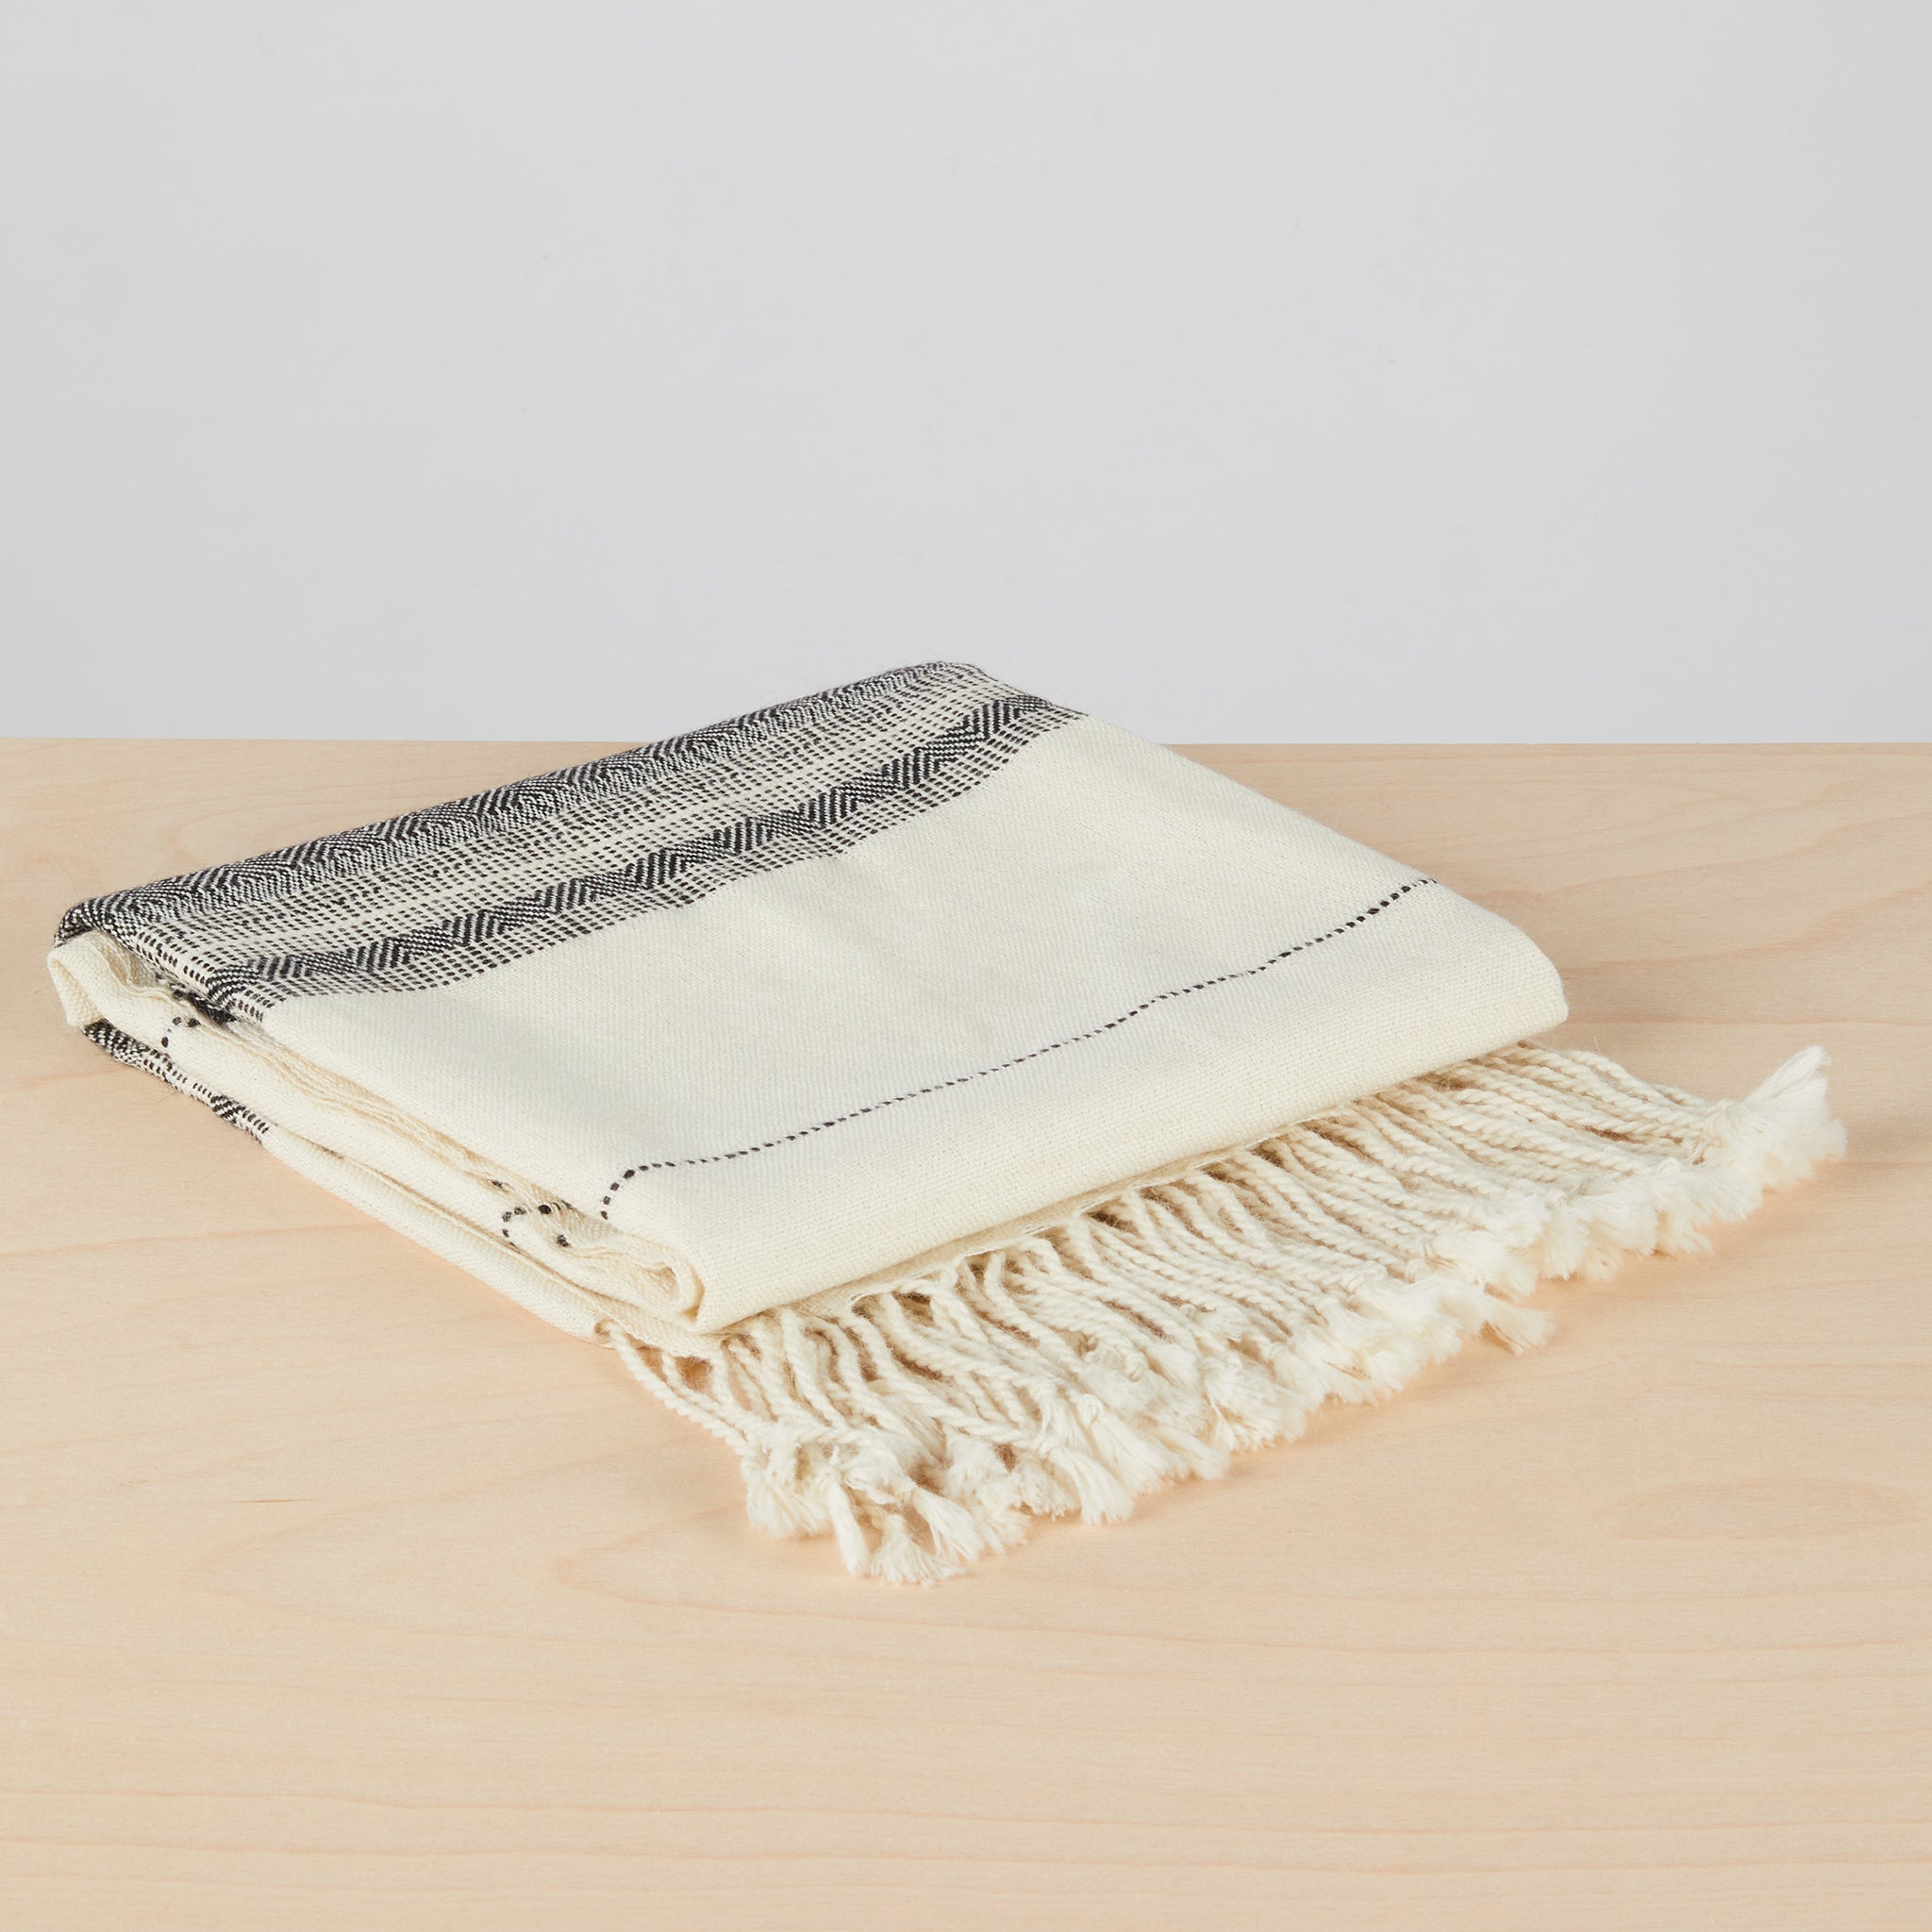 Handgewebte Alpakadecke Coya gefaltet. Besonders weiche, handgewebte, detailreiche Decke aus 100% Baby-Alpakawolle.